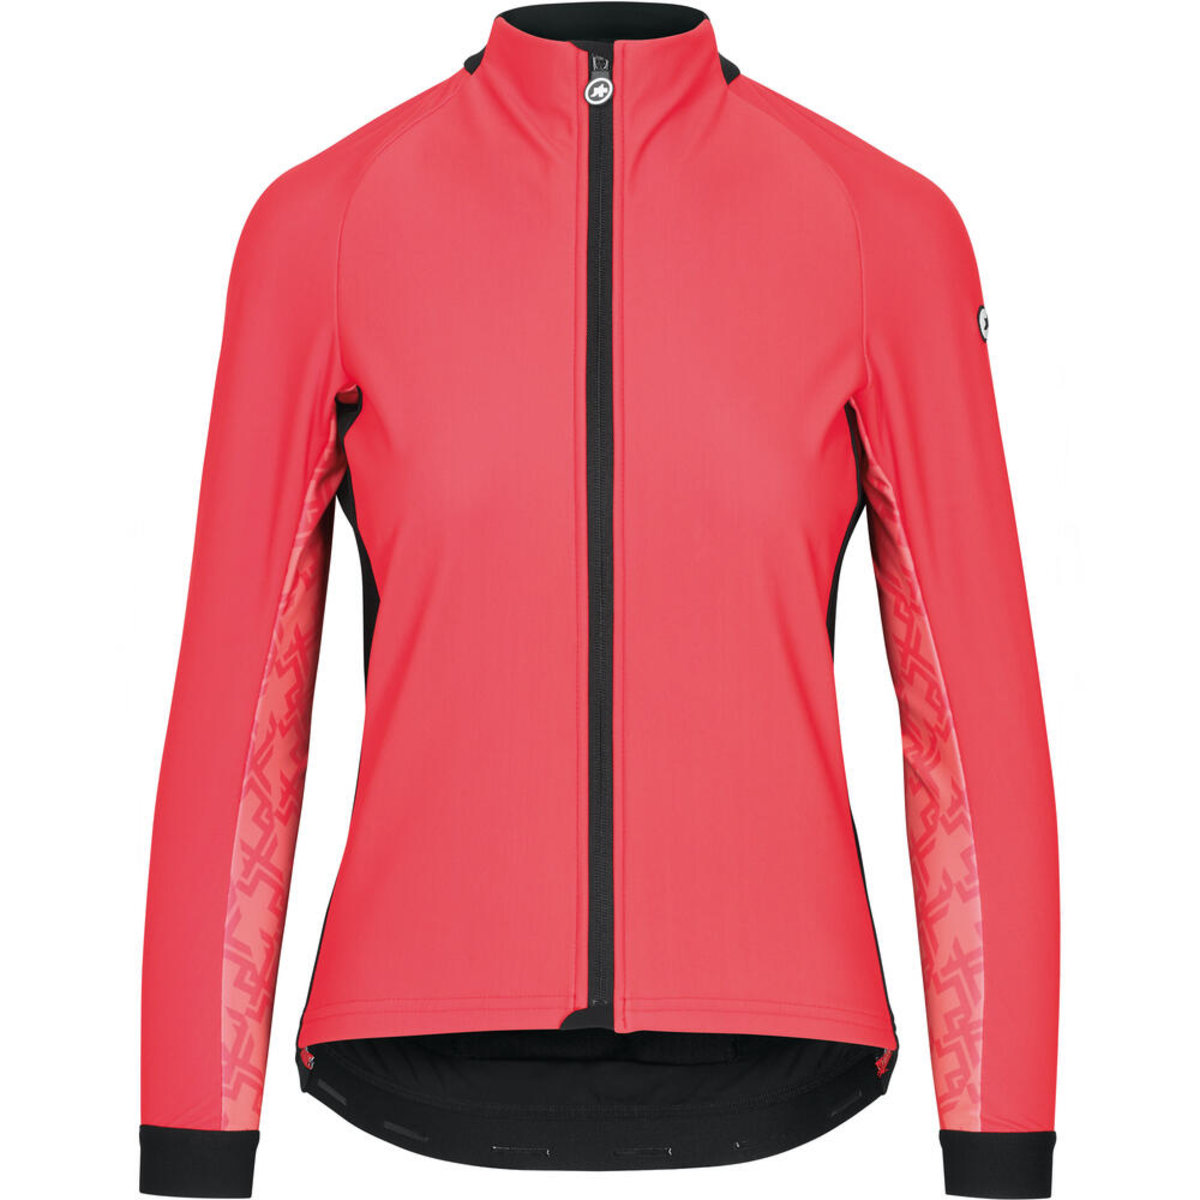 Куртка ASSOS Uma GT Wind Jacket, довг. рукав, женская, рожева, L фото 